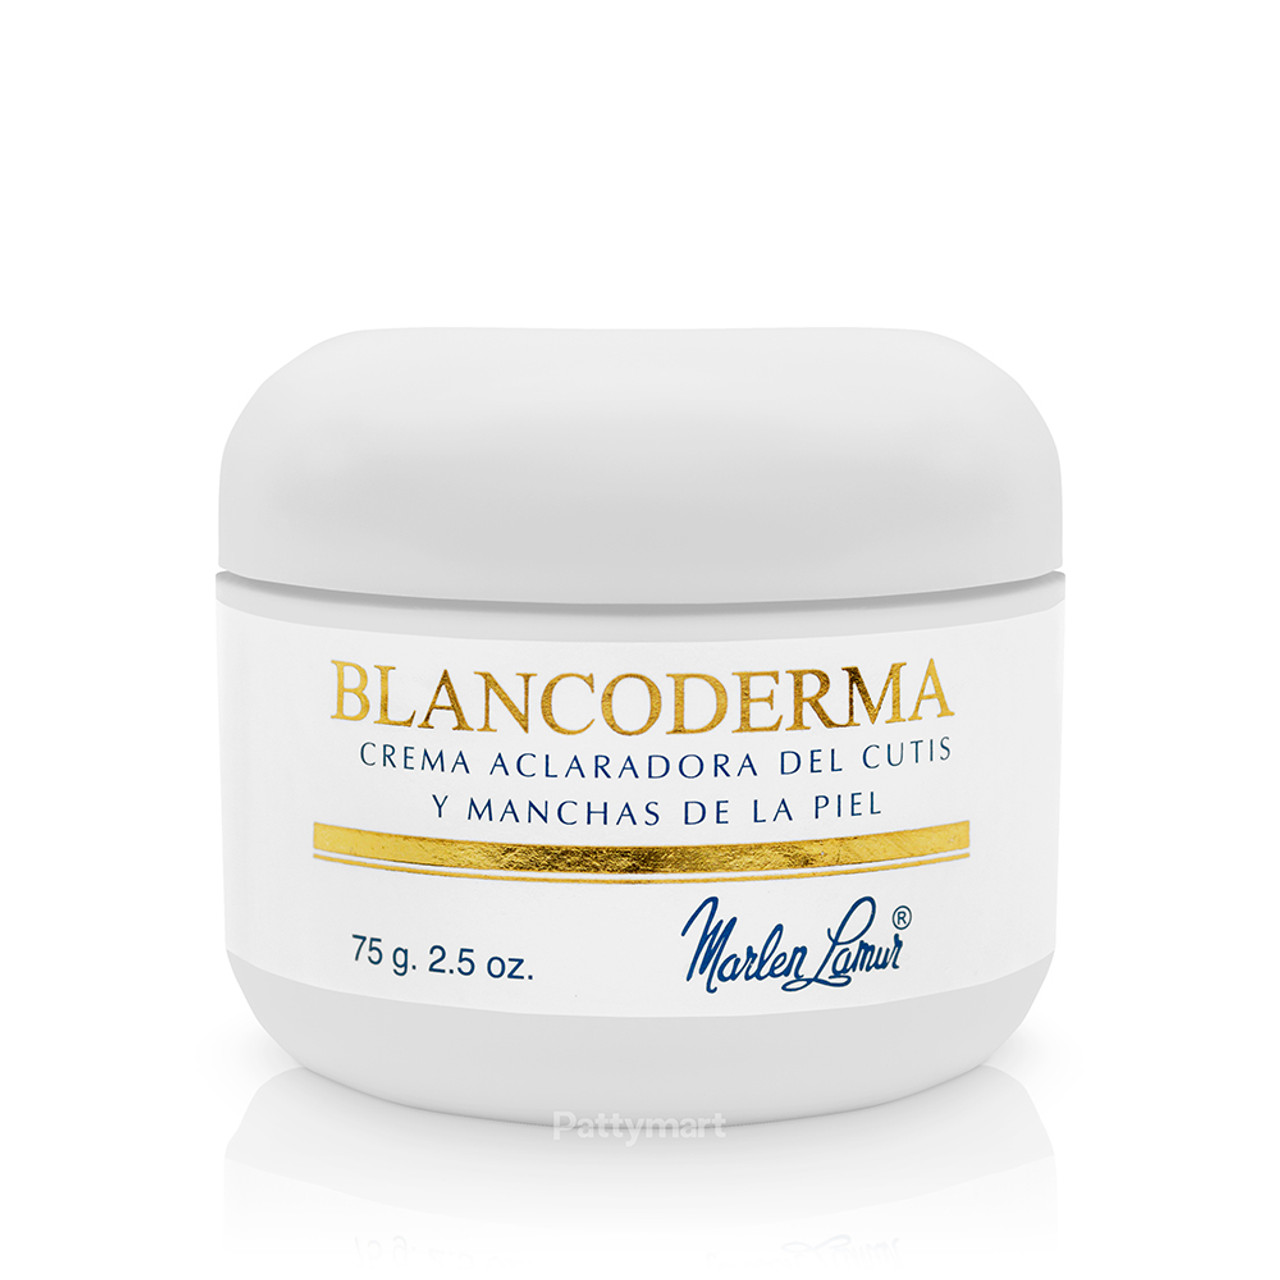 3 PACK BLANCODERMA Whitening Cream 2.5 Oz. CREMA BLANQUEADORA Brasil Europe  Asia